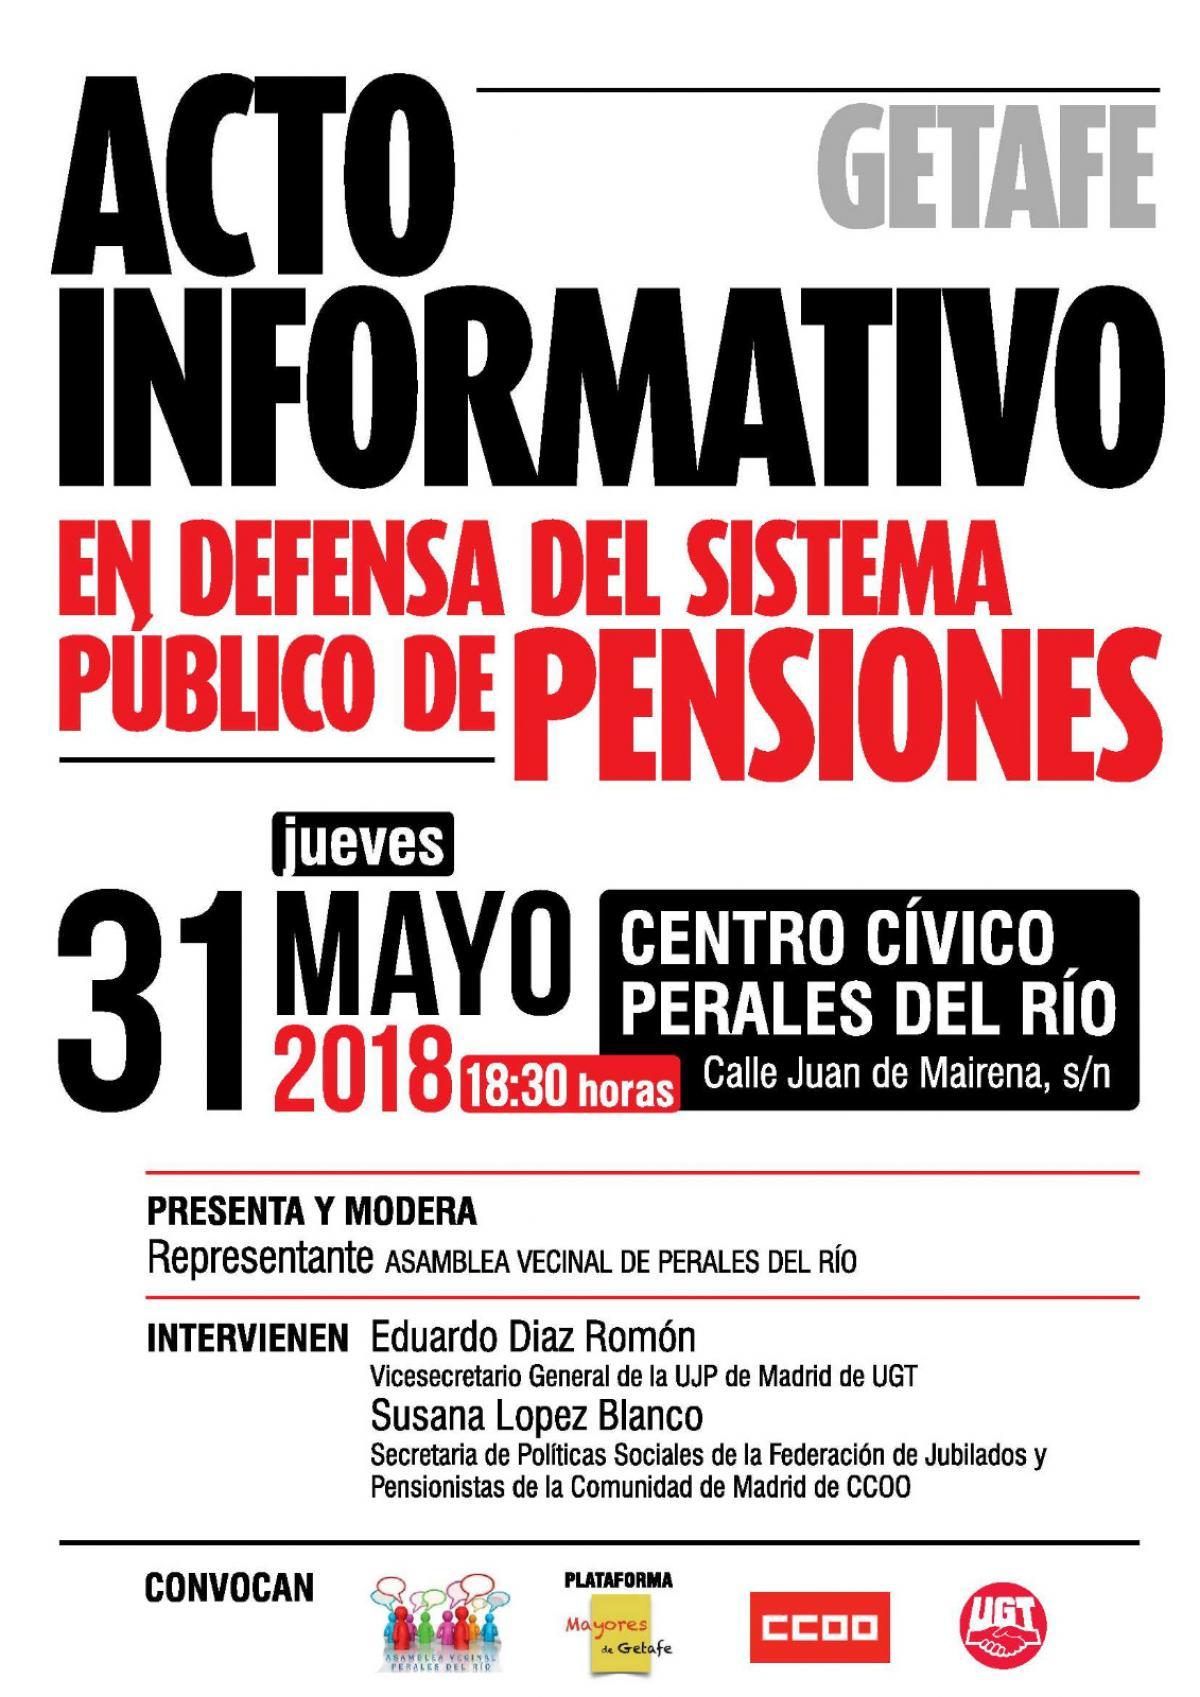 Acto informativo en defensa del sistema público de pensiones en Getafe